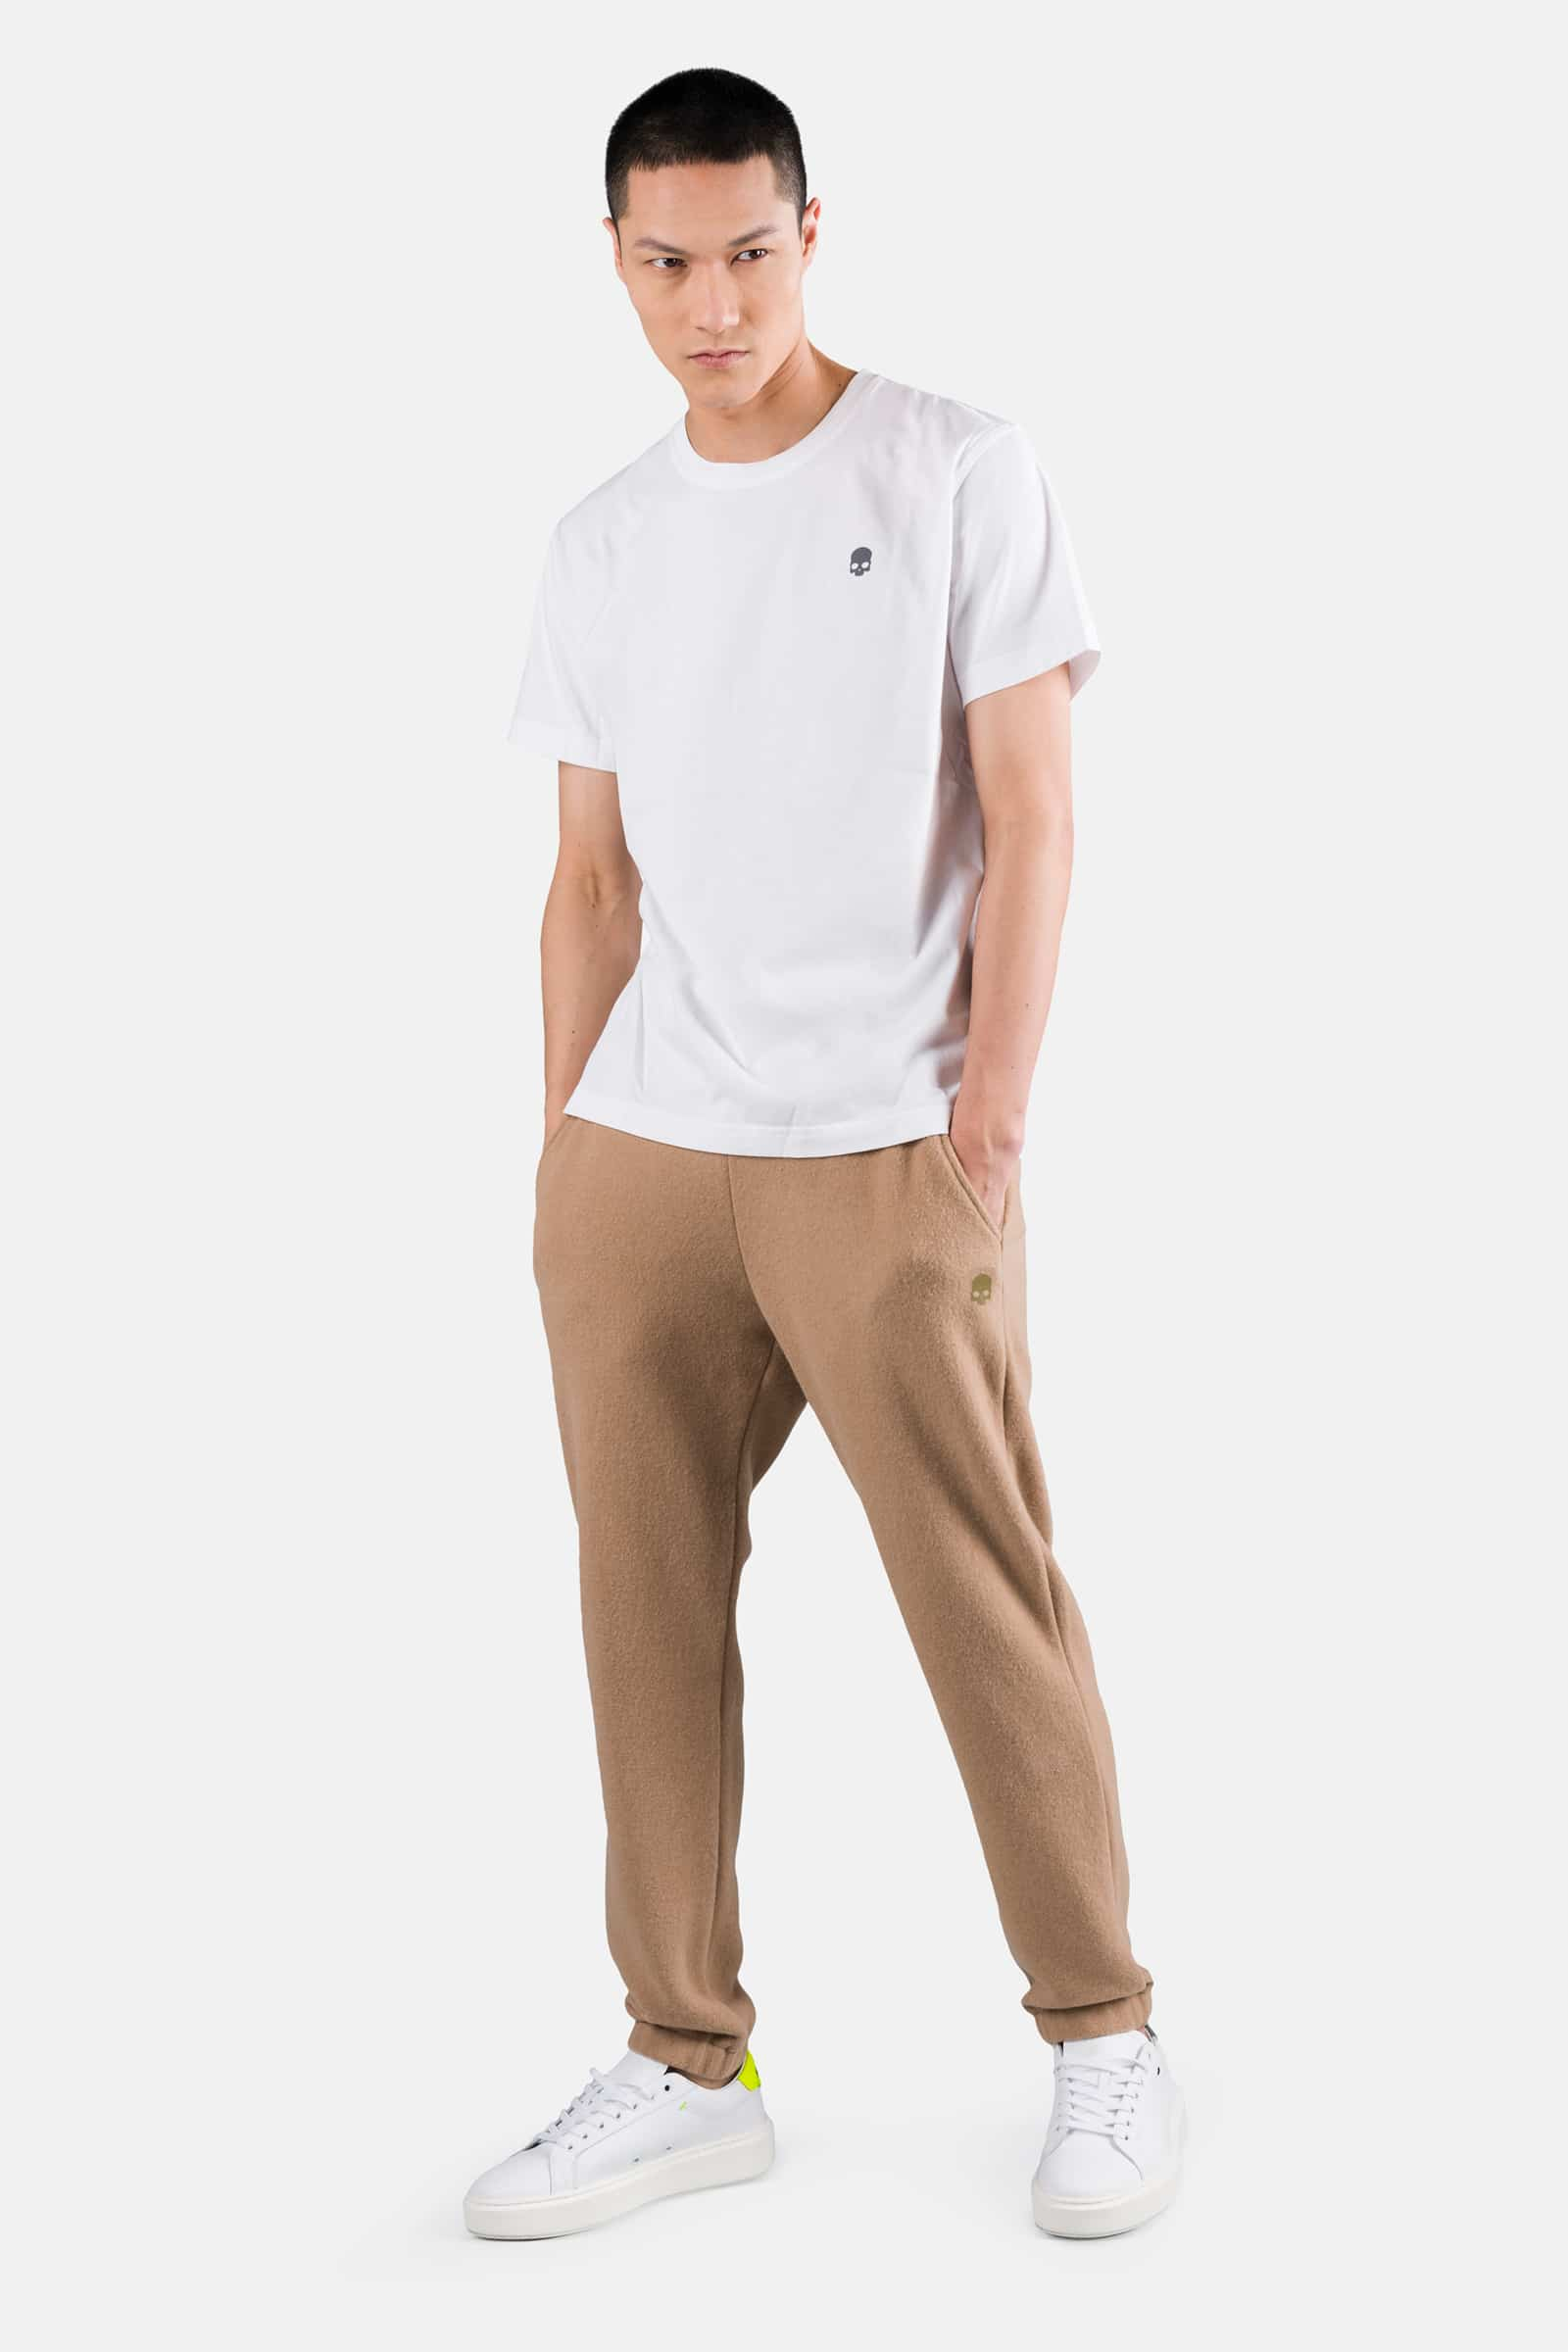 SPORTSWEAR TEE - WHITE - Hydrogen - Luxury Sportwear